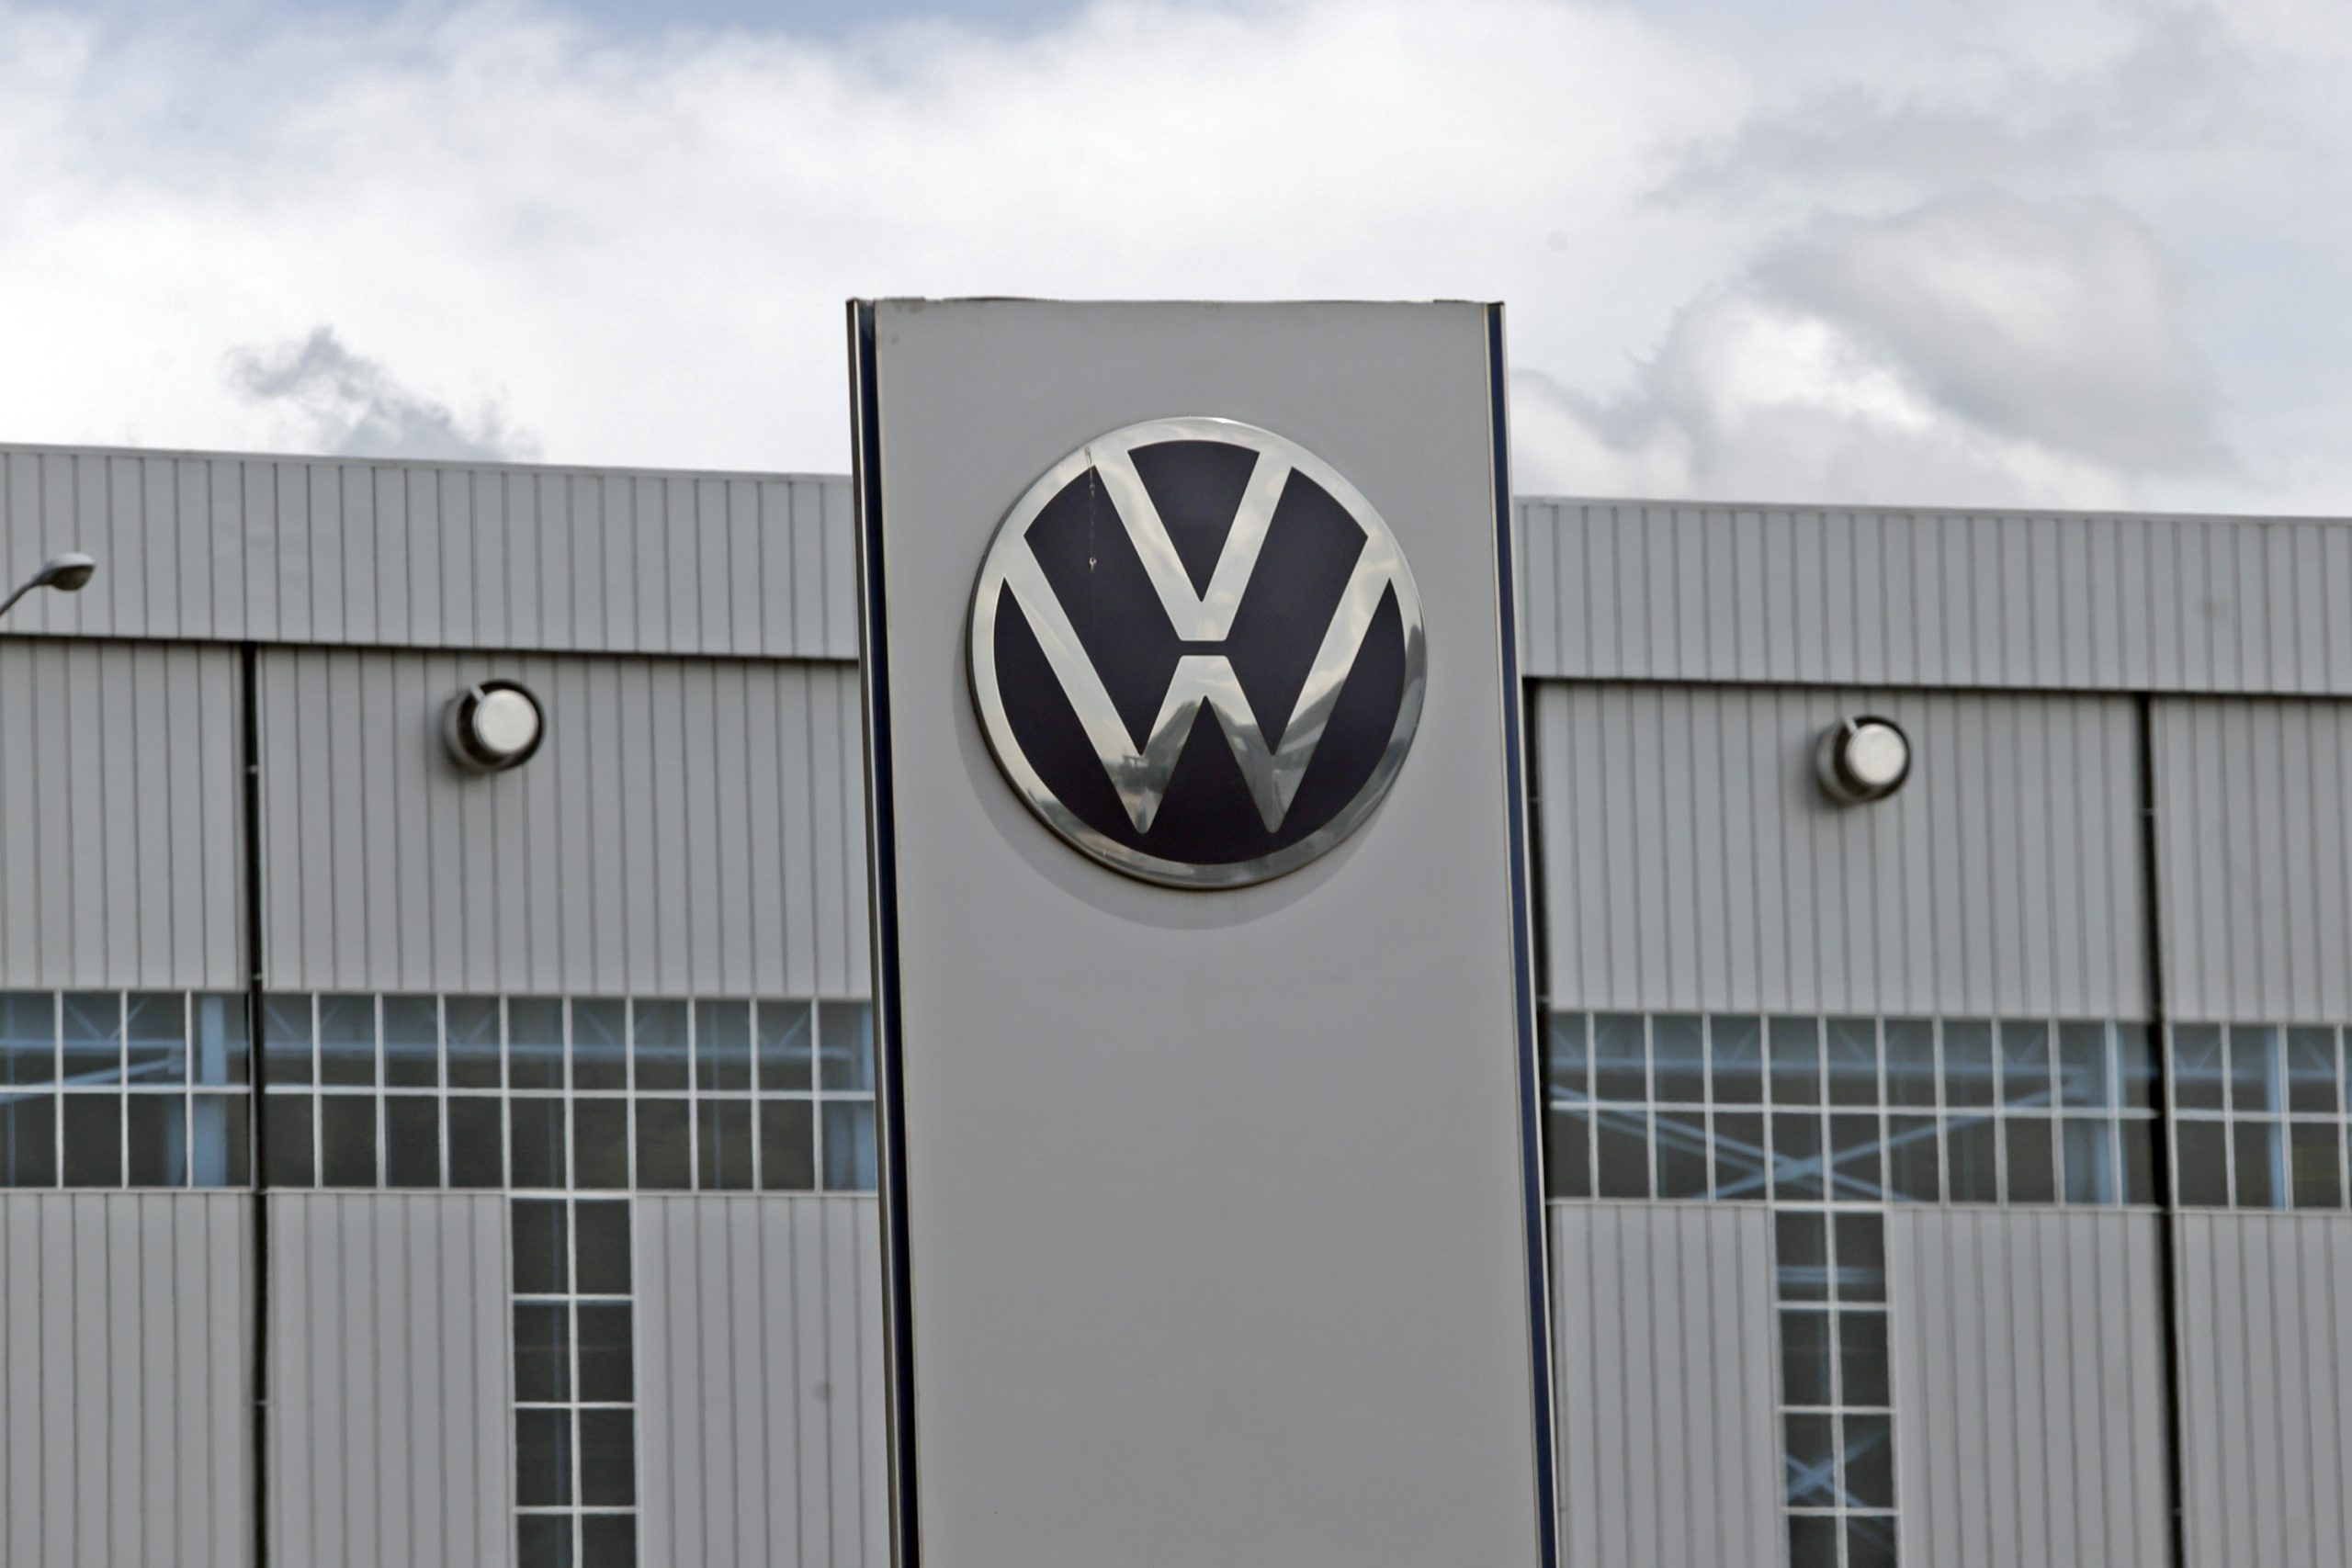 Alistan votación sobre aumento salarial en la planta de VW